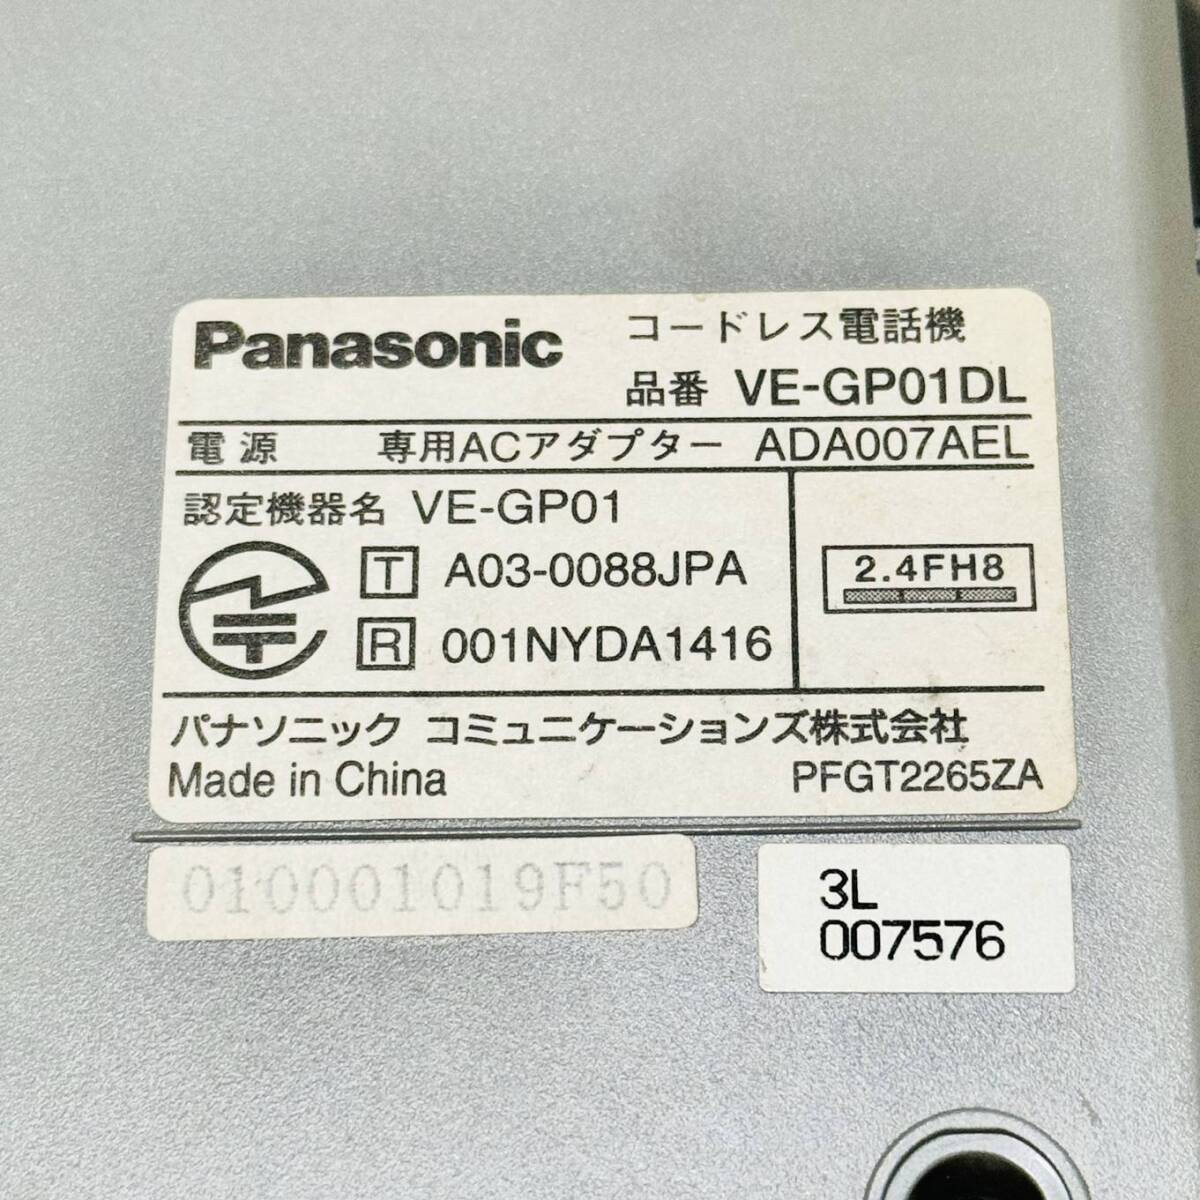 甲HK9961 クリーニング済 動作確認済 パナソニック Panasonic 電話機 VE-GP01DL 留守電機能 ナンバーディスプレイ 親機のみの画像7